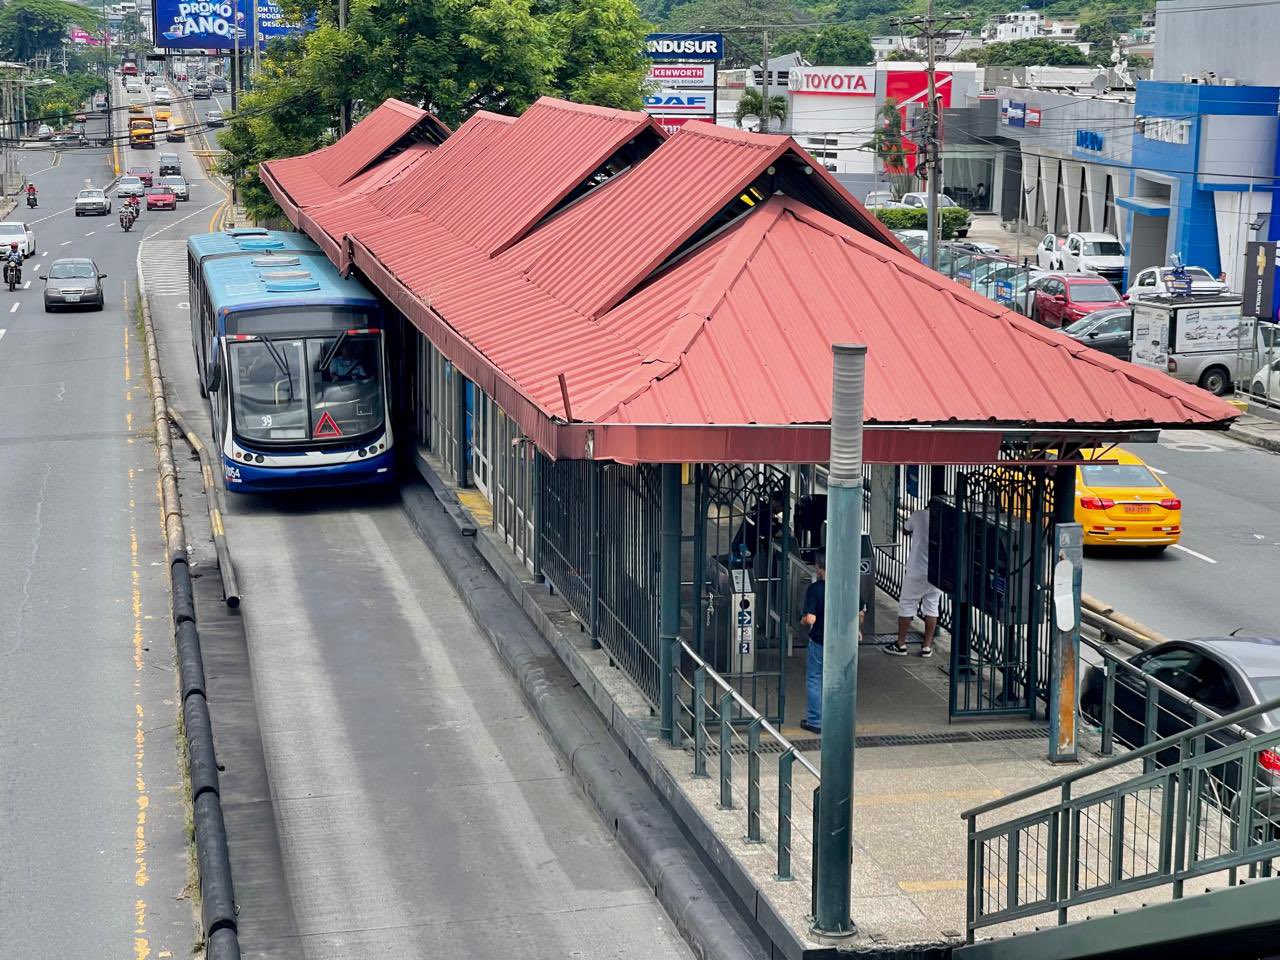 Metrovía Guayaquil sube precio Aquiles Alvarez